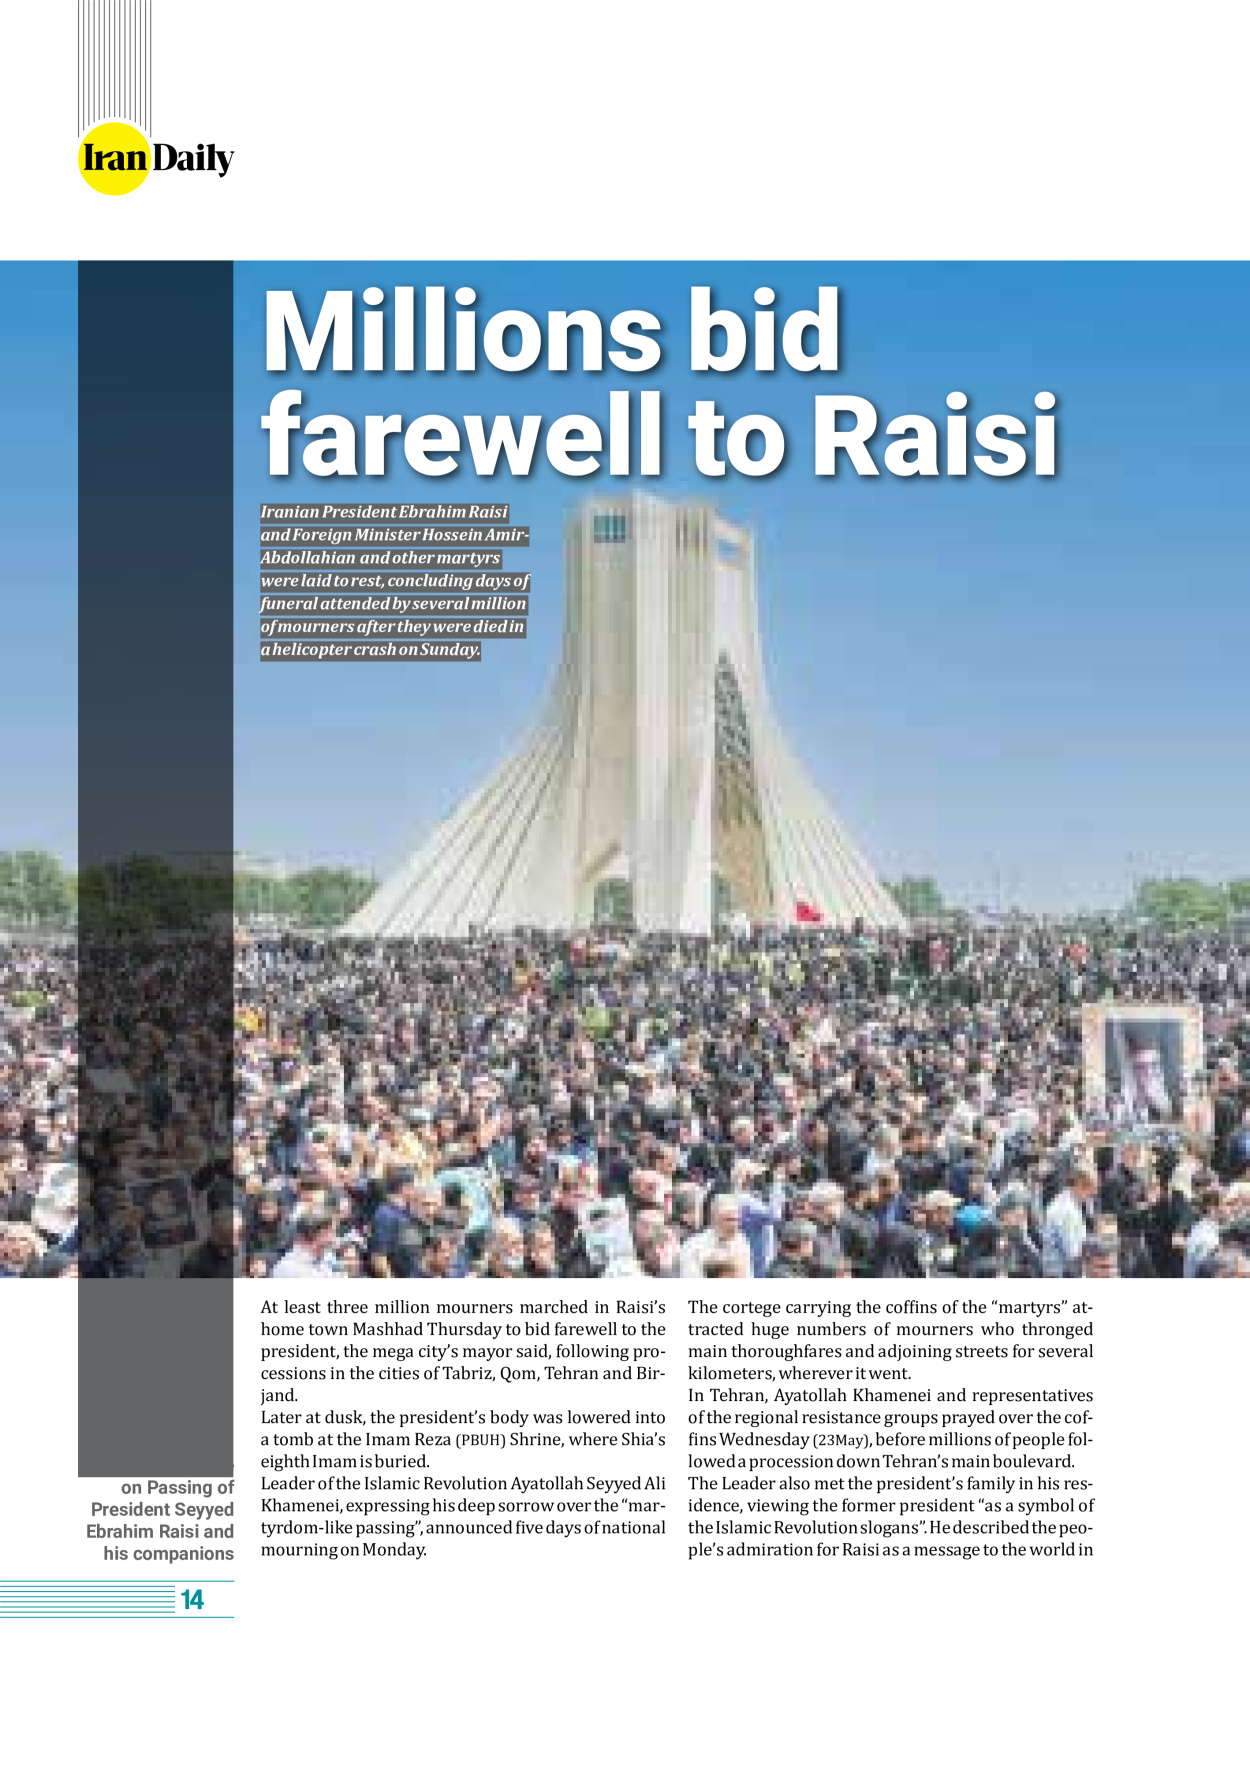 روزنامه ایران - ویژه نامه وِزه نامه چهلم شهید رییسی( انگلیسی) - ۱۷ تیر ۱۴۰۳ - صفحه ۱۴